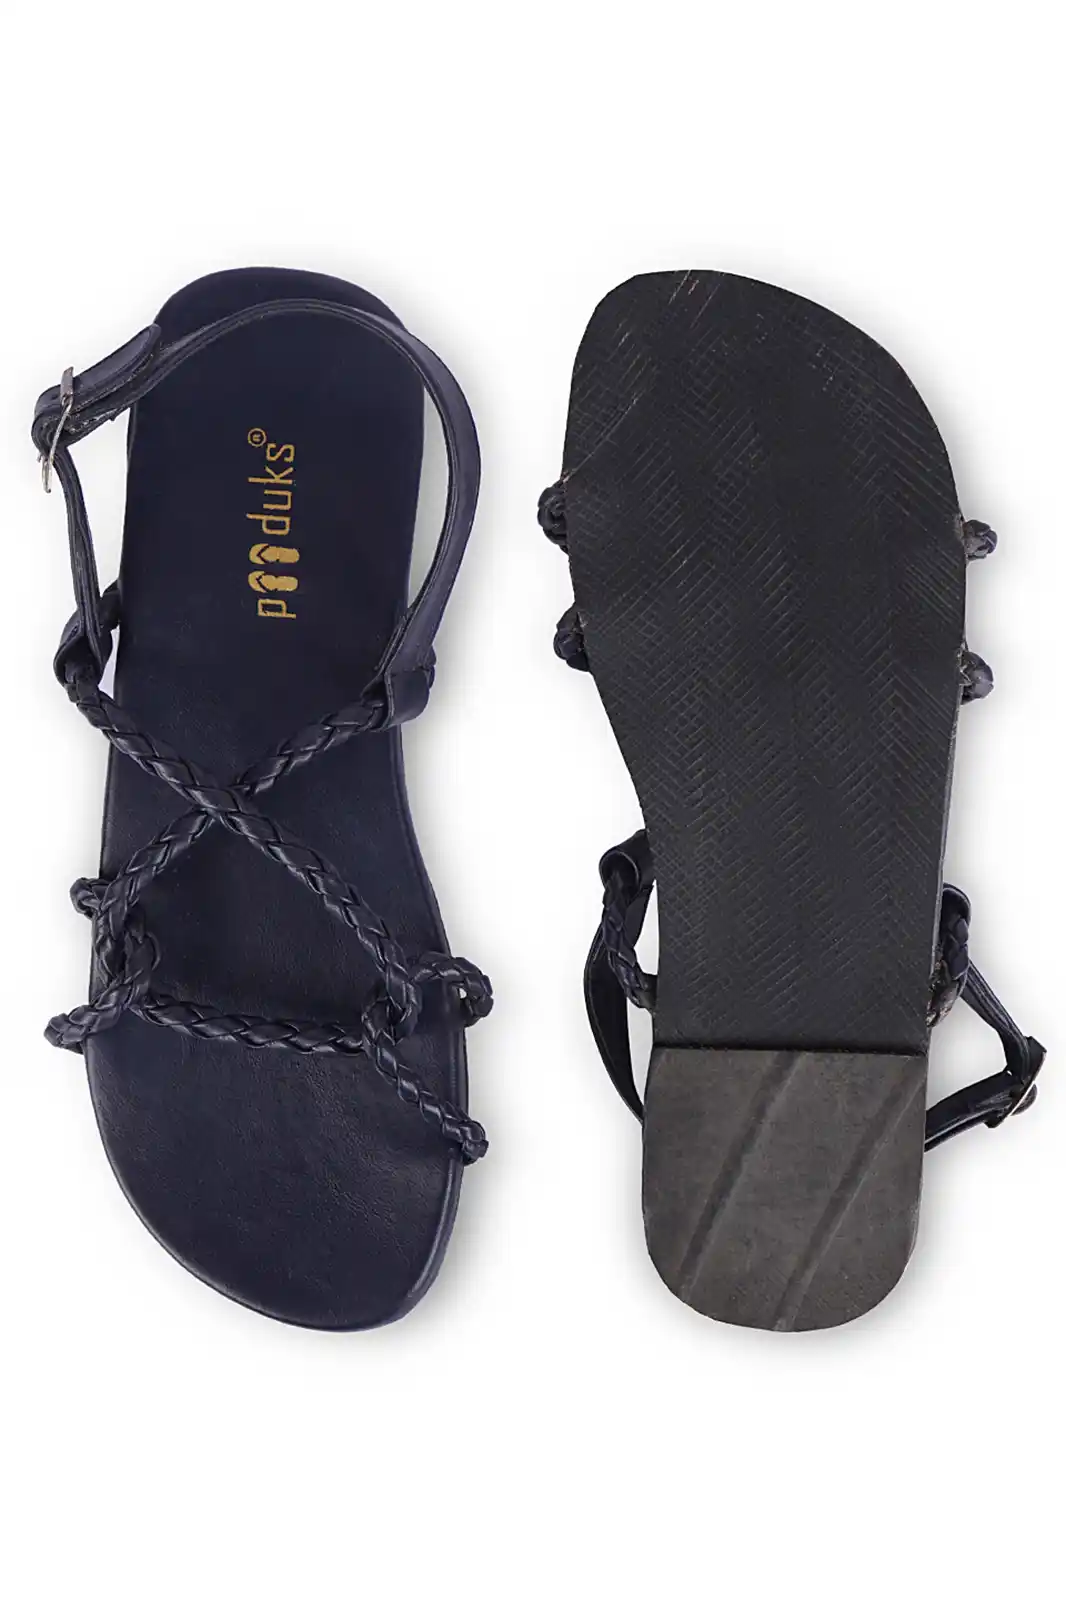 Details 66+ flipkart sandals womens latest